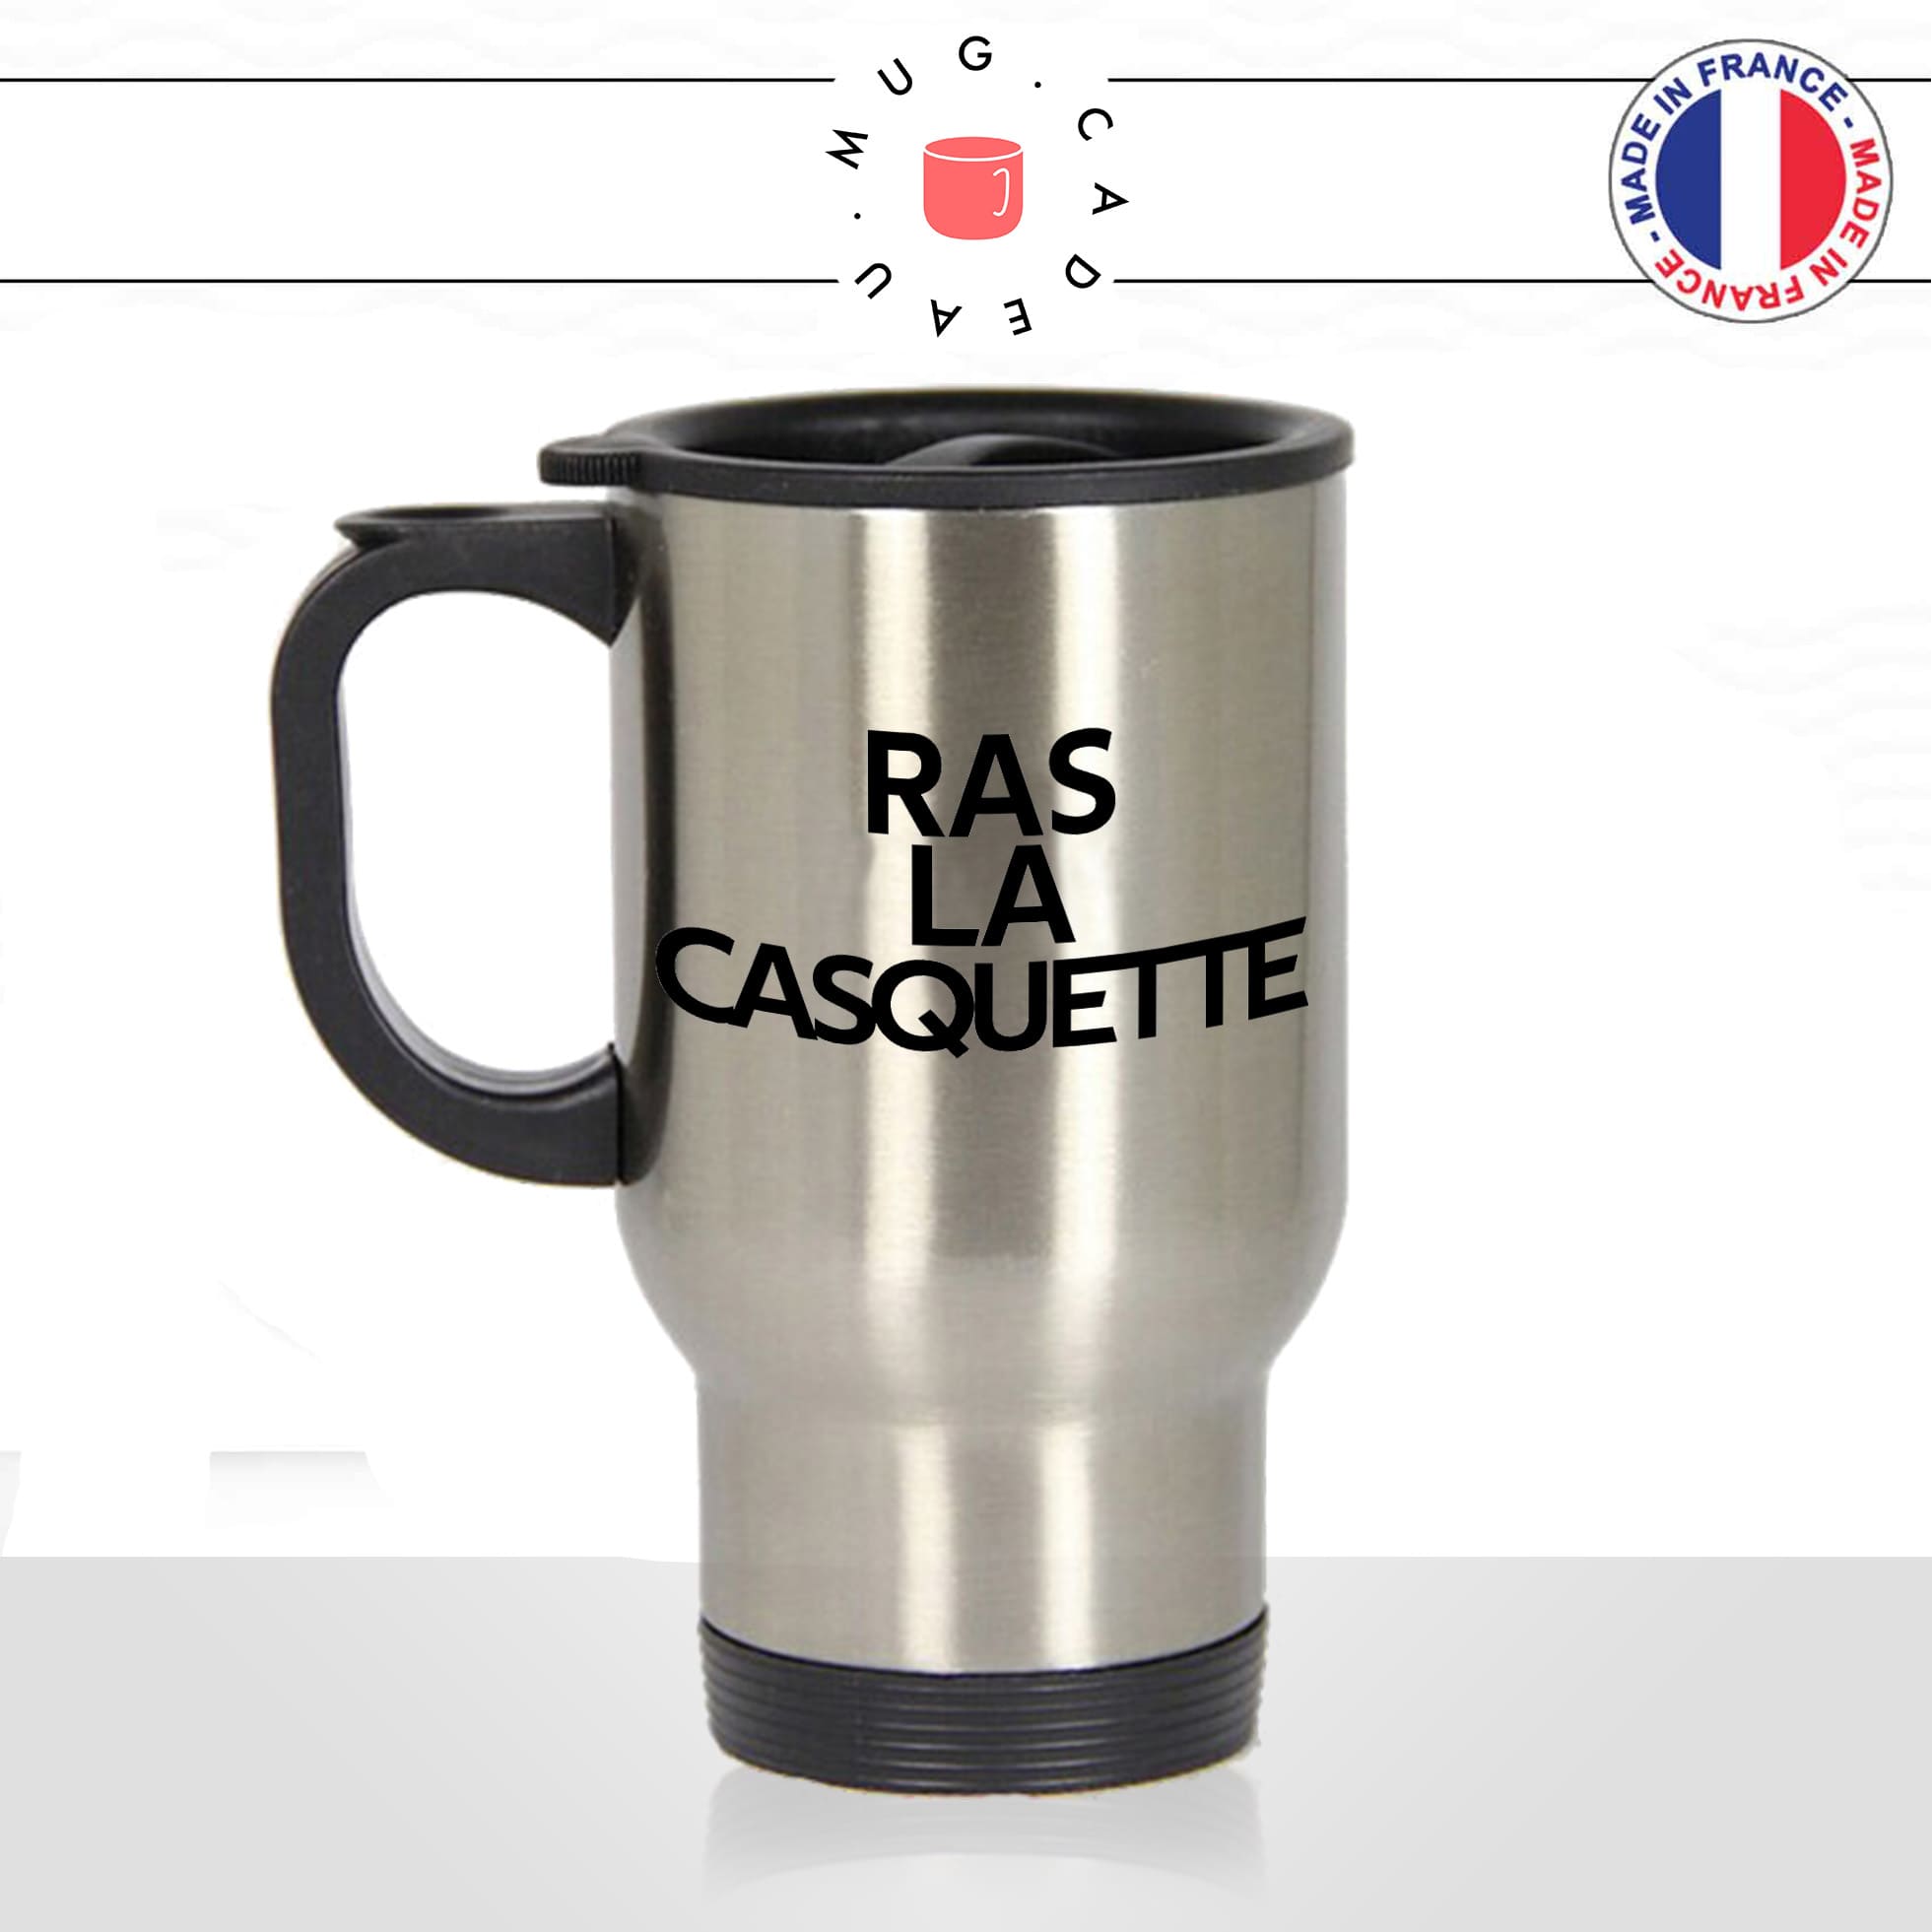 mug-tasse-thermos-isotherme-voyage-ras-la-casquette-expression-francaise-jen-ai-marre-humour-fun-idée-cadeau-originale-cool